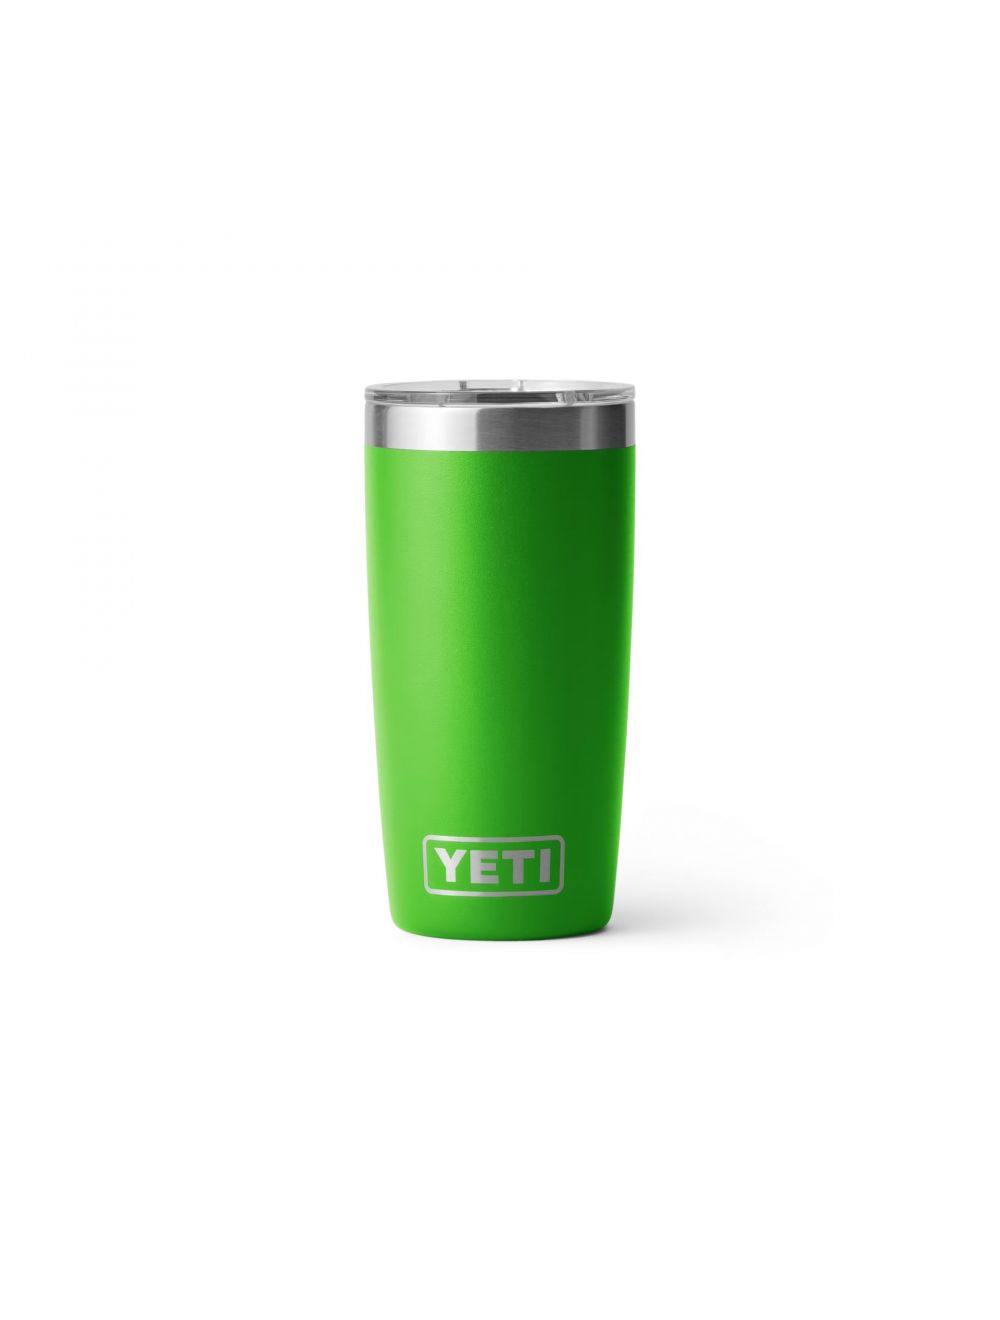 Yeti - Rambler 20 oz Travel Mug - Canopy Green